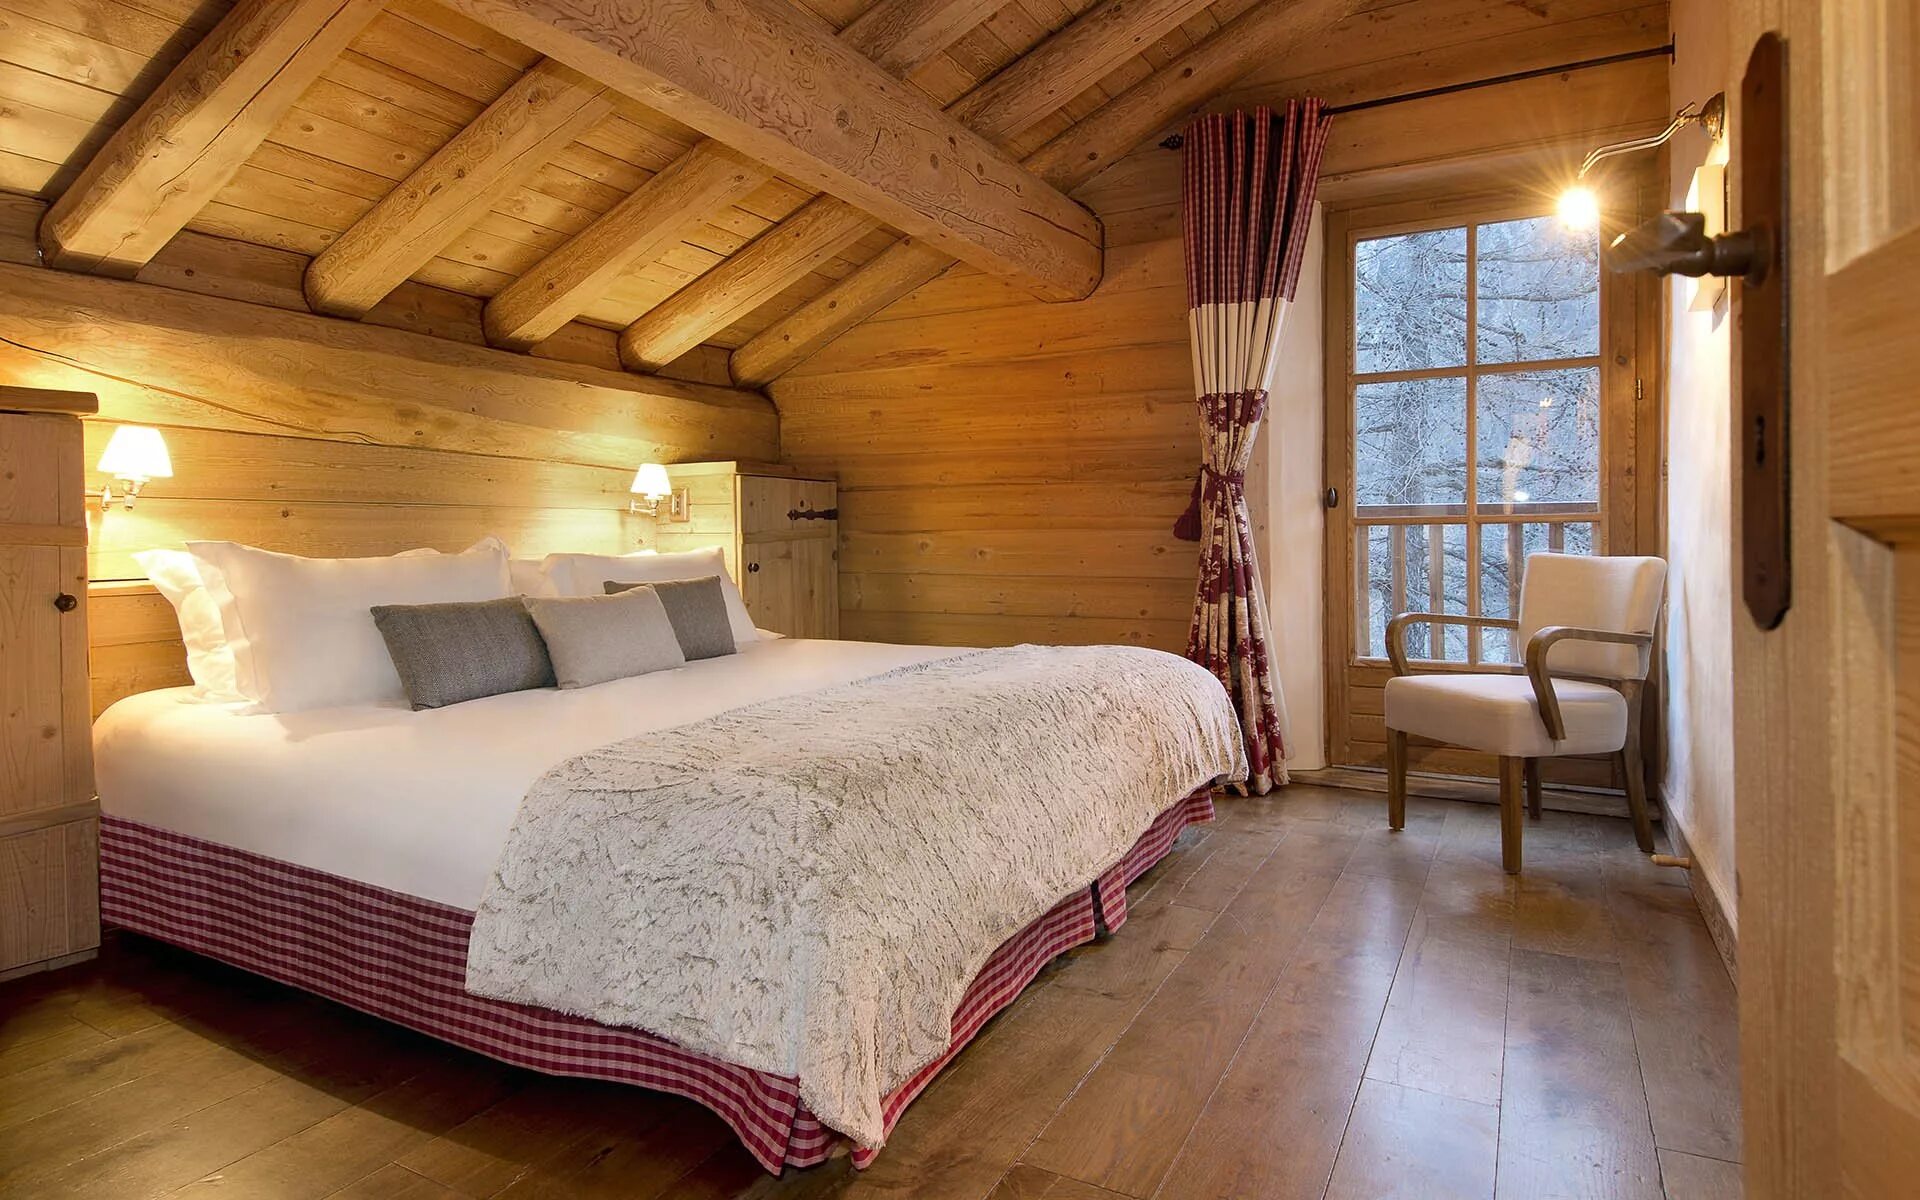 Дизайн комнат в деревянном доме. Шале Прованс (Chalet Provence). Интерьер спальни в деревянном доме. Спальня в мансарде деревянного дома. Спальня в загородном деревянном доме.